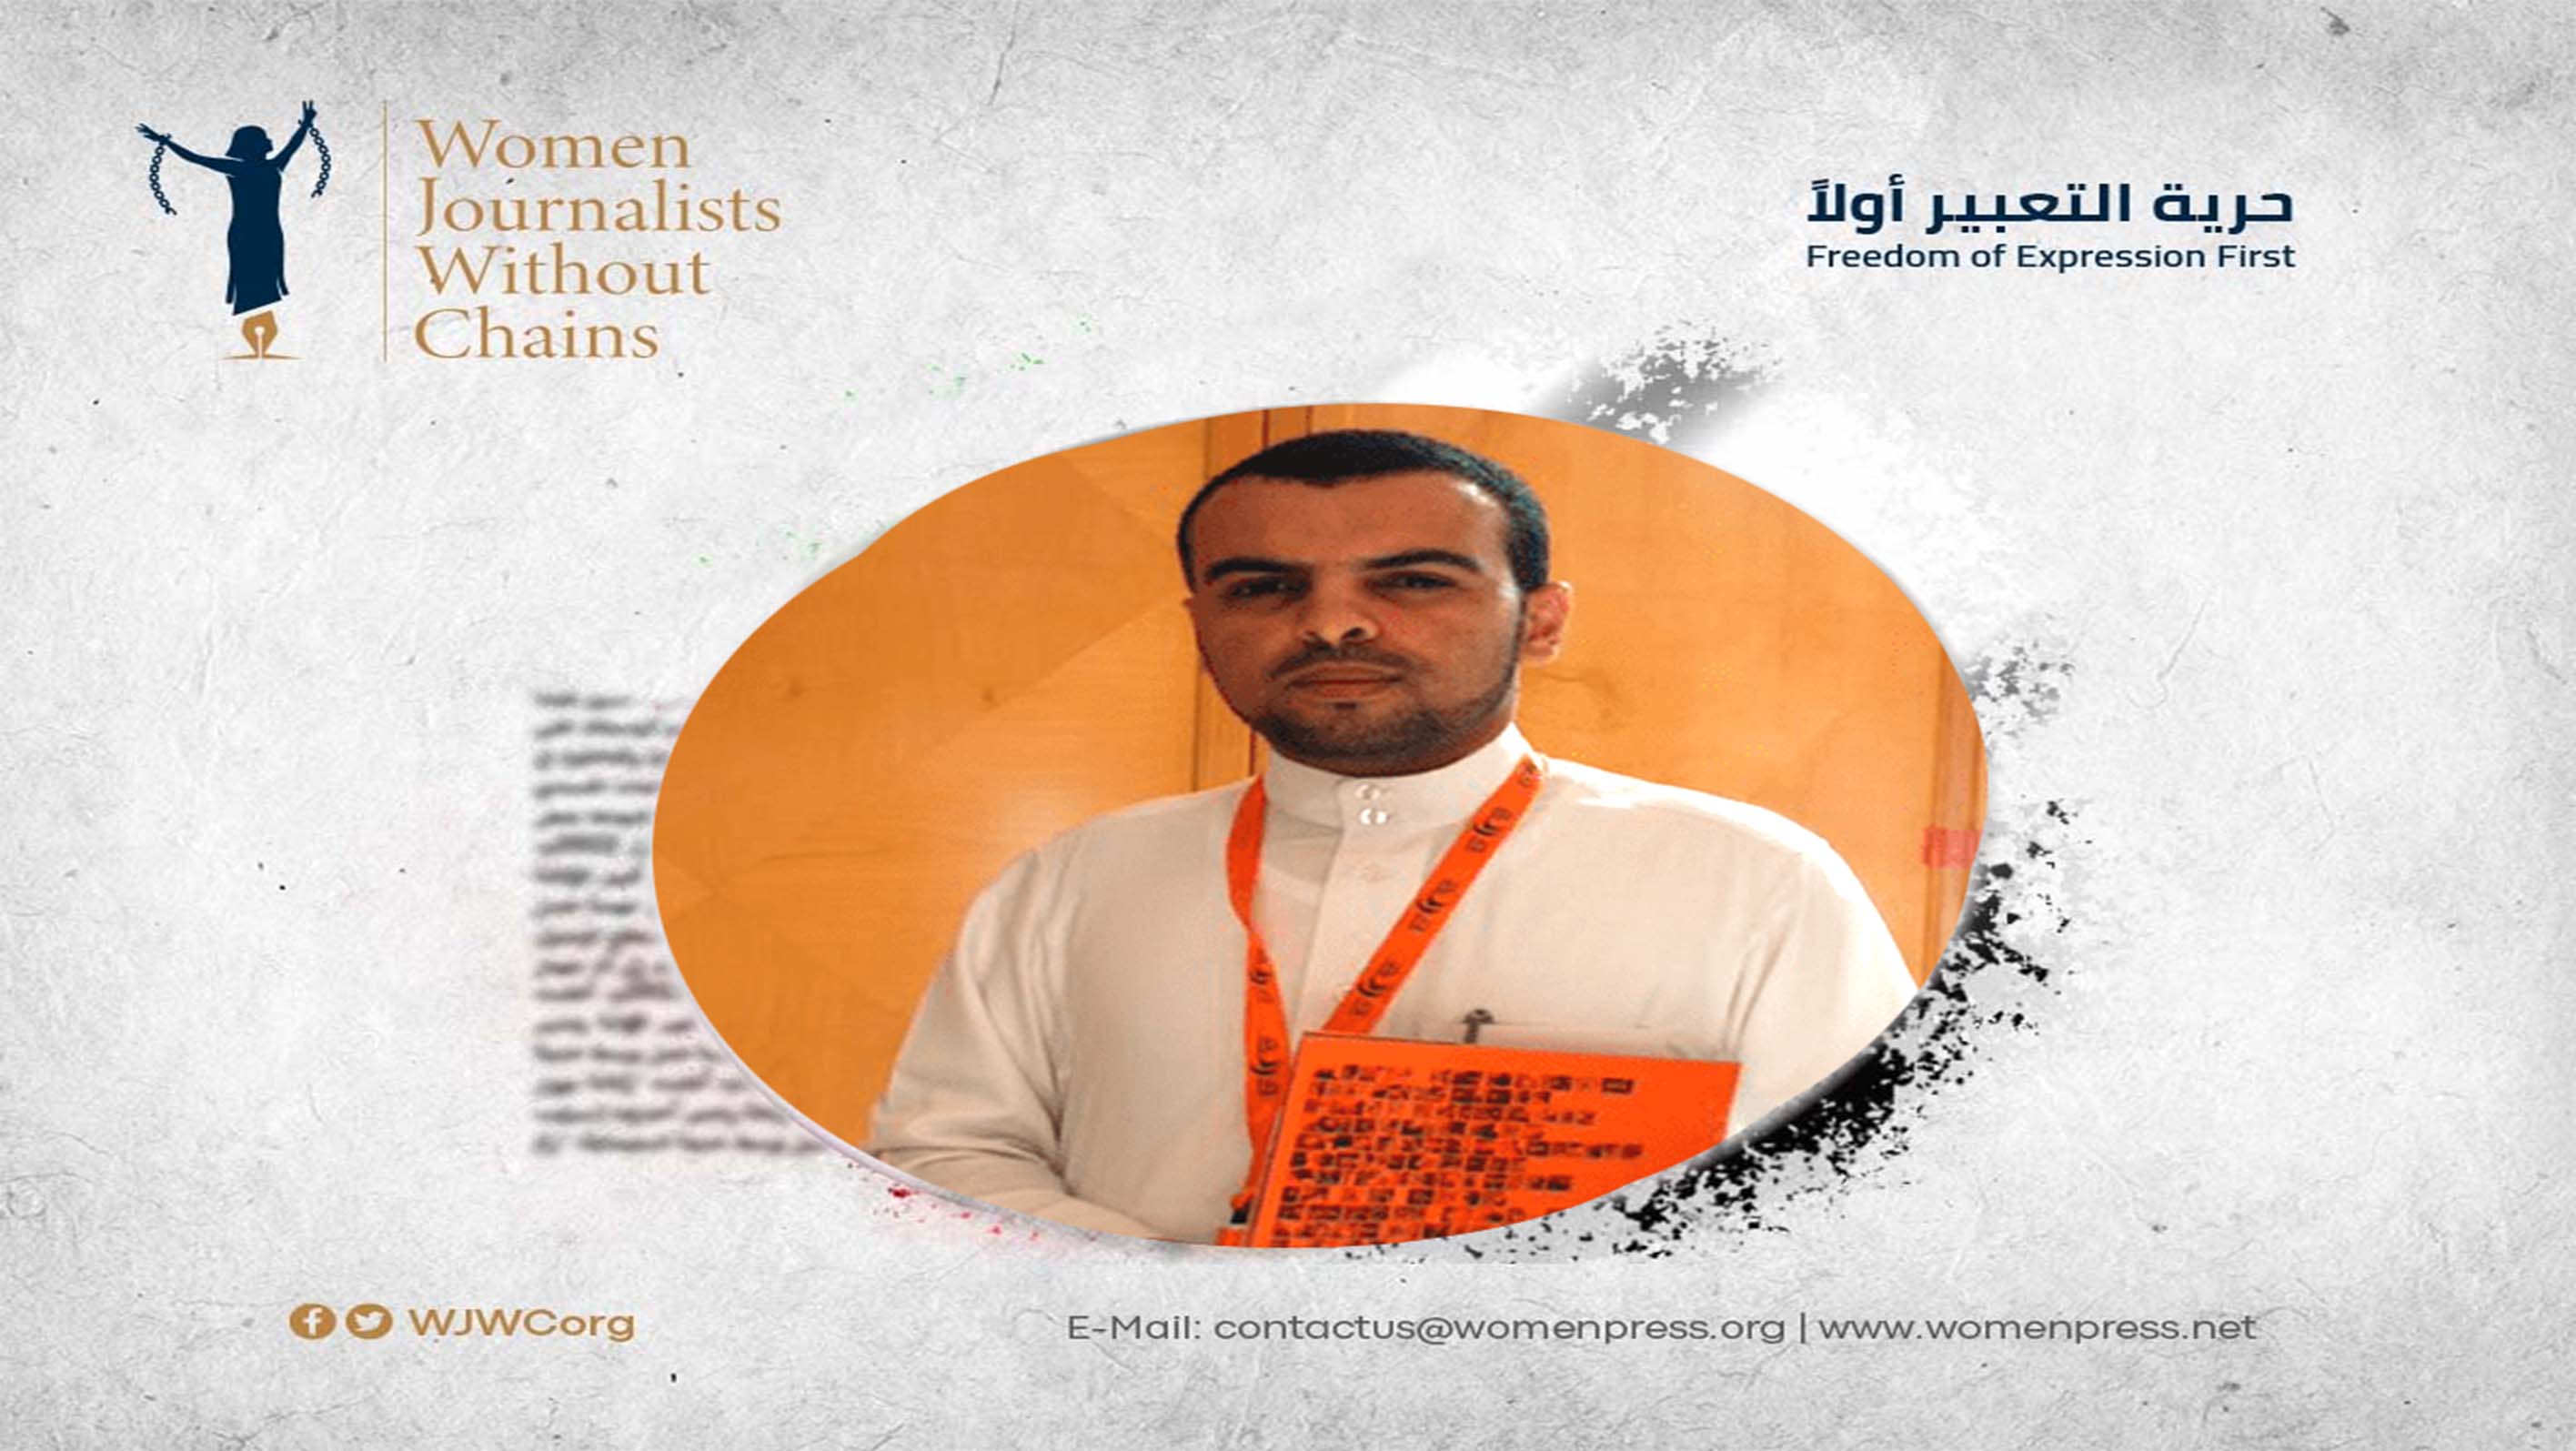 WJWC reiterates demand to Saudi authorities to release Yemeni journalist al-Muraisi